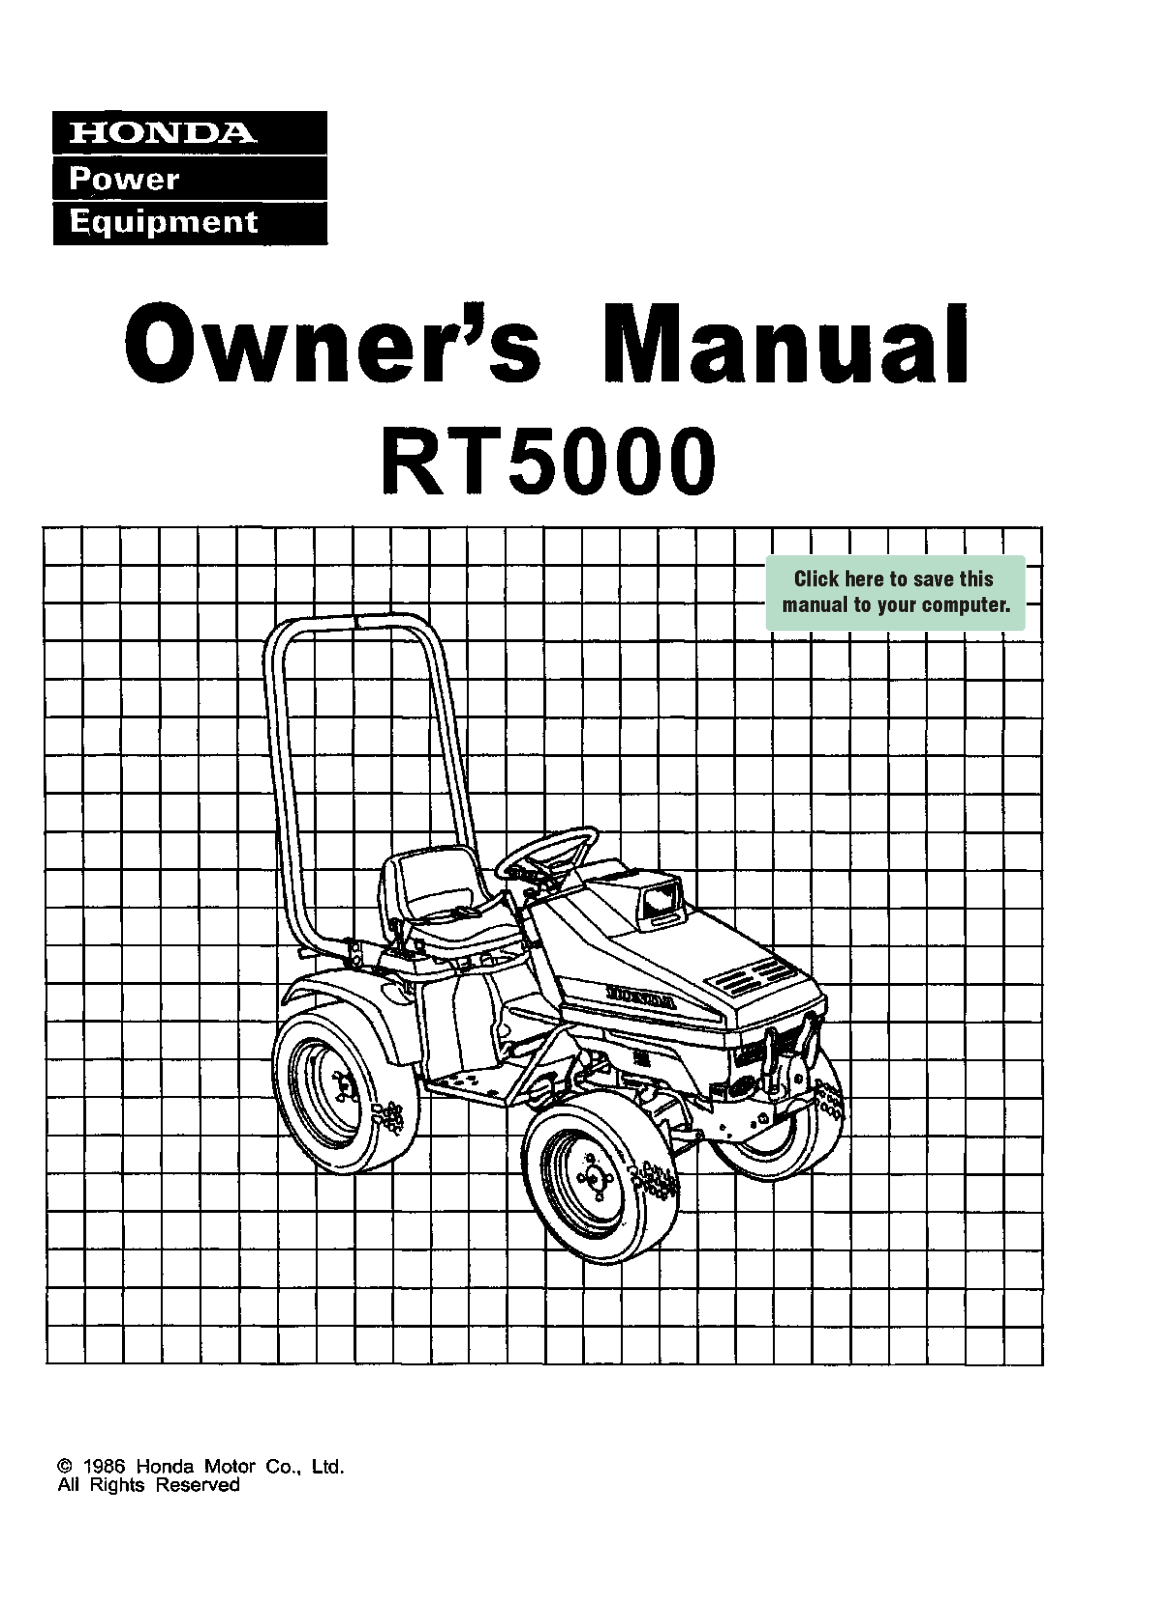 Honda RT5000 Owner's Manual